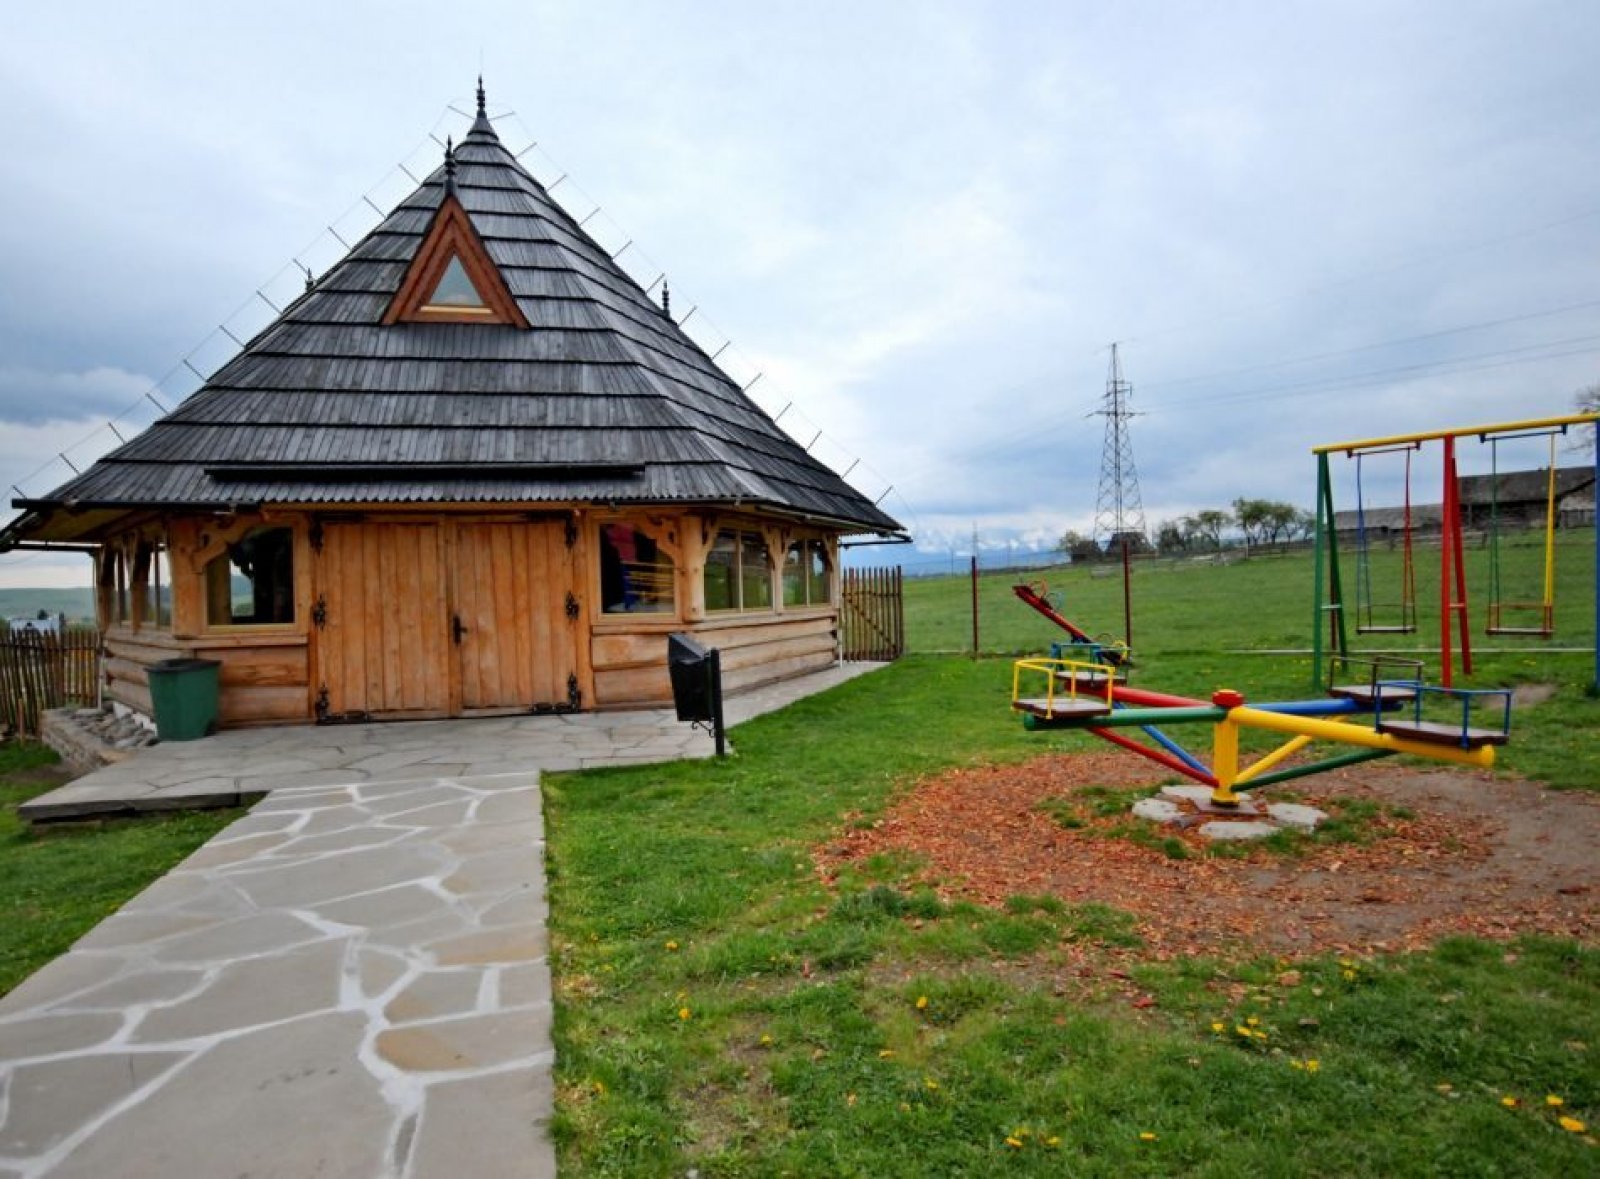 PLACÓWKA Holiday Center Białka Tatrzańska mountains Zakopane Tatry v Polsku 27